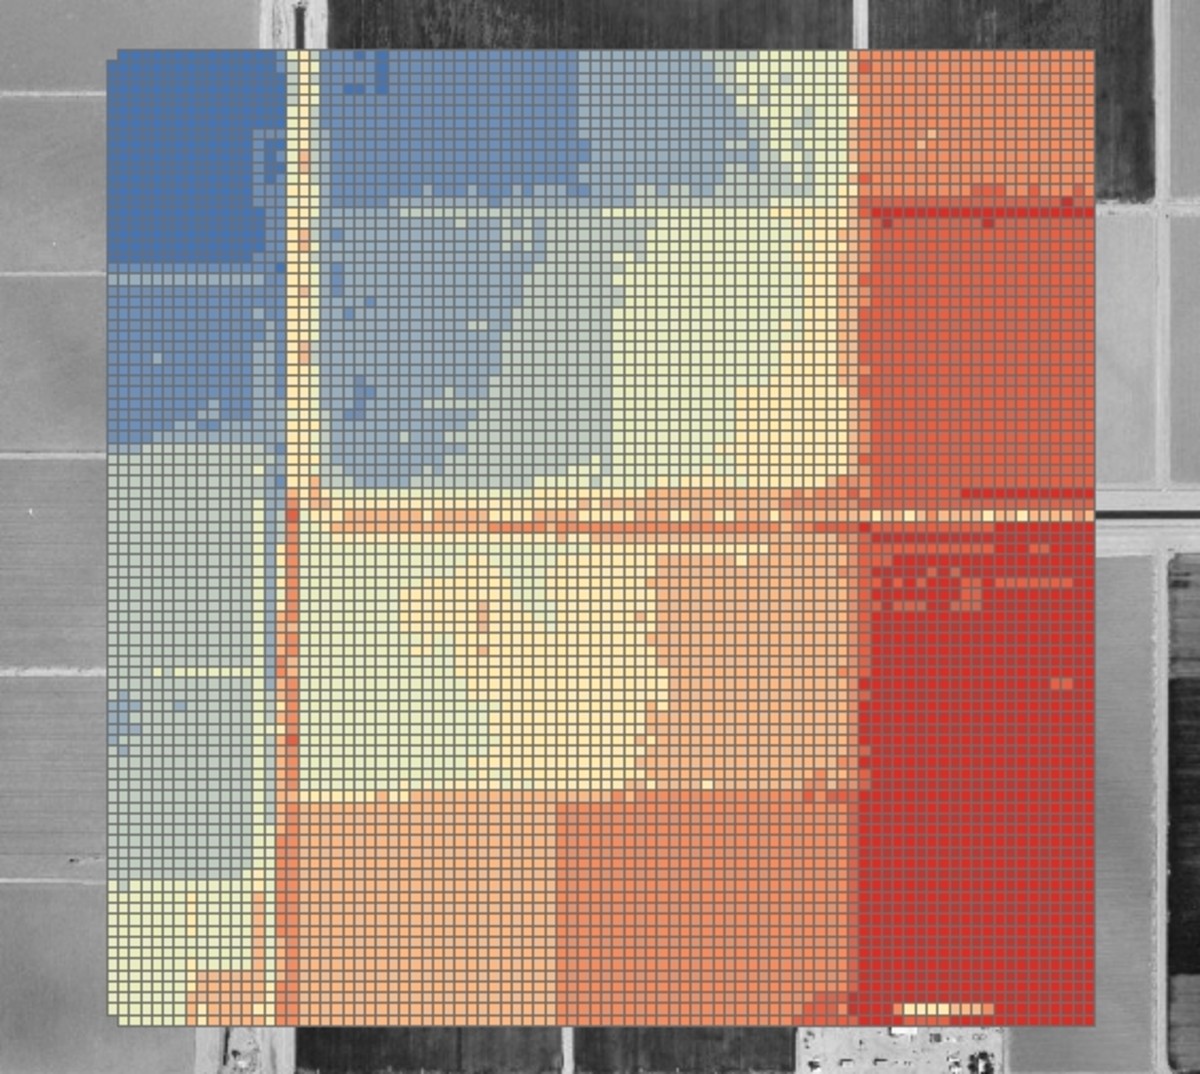 Colorized FLO-2D Elevation Grid